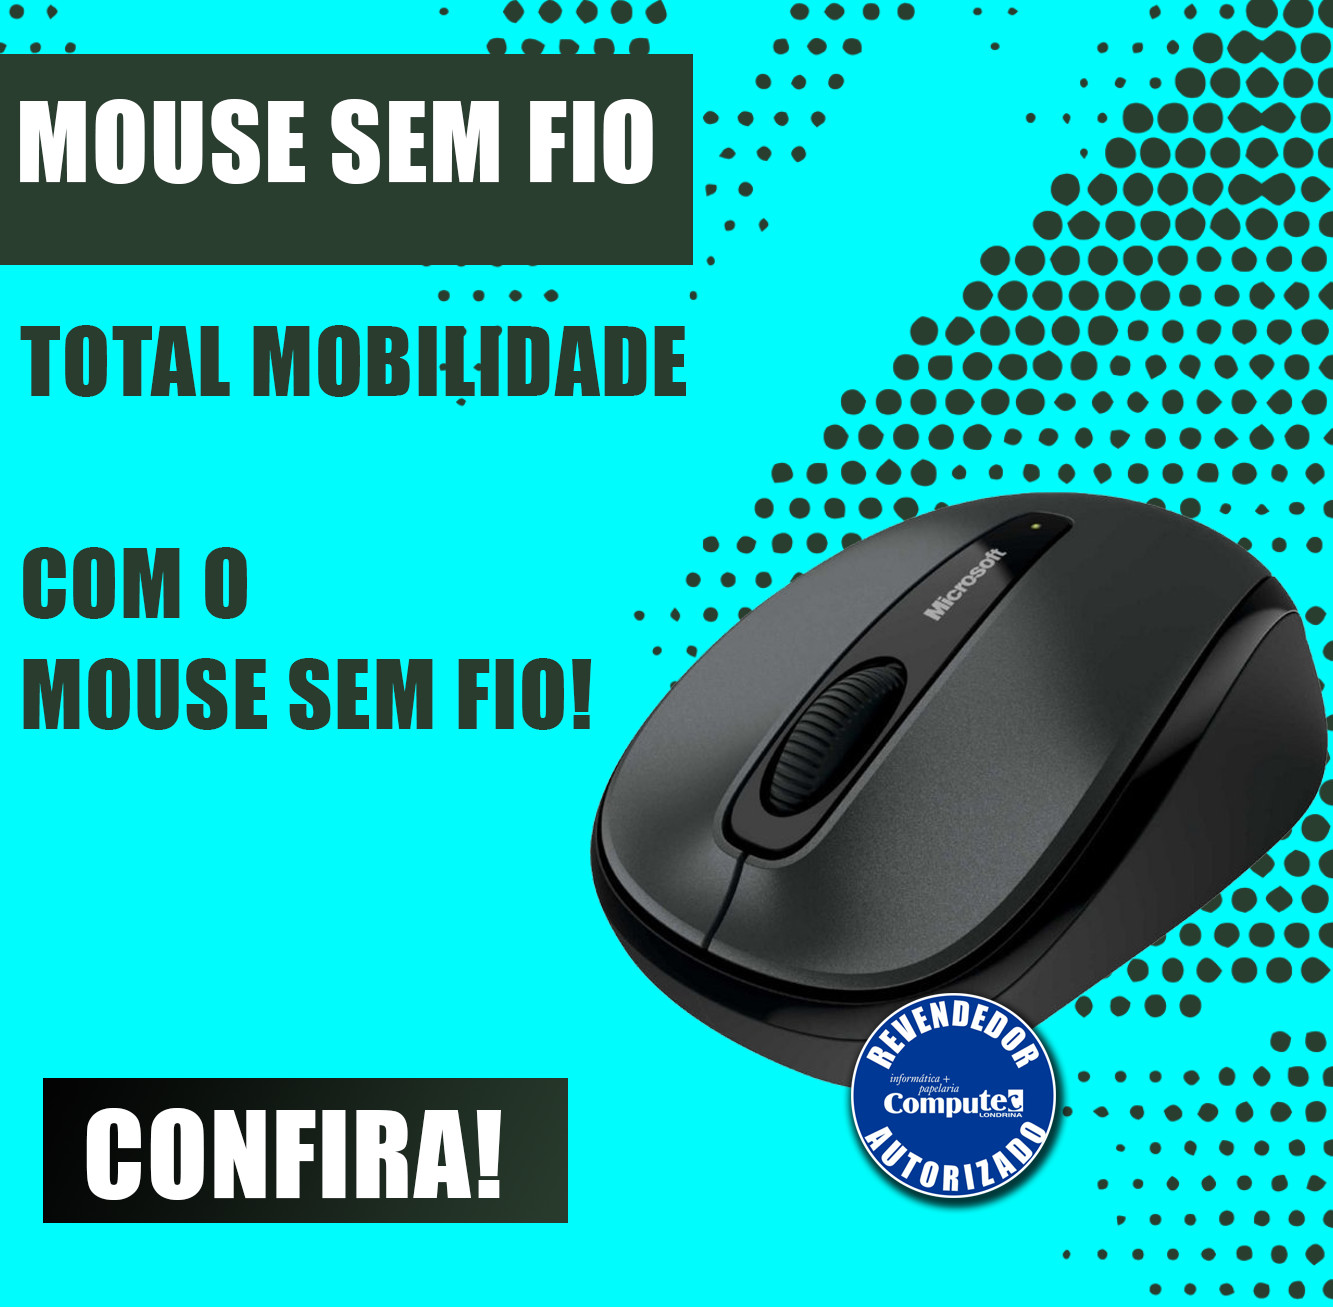 Mini mouse 3